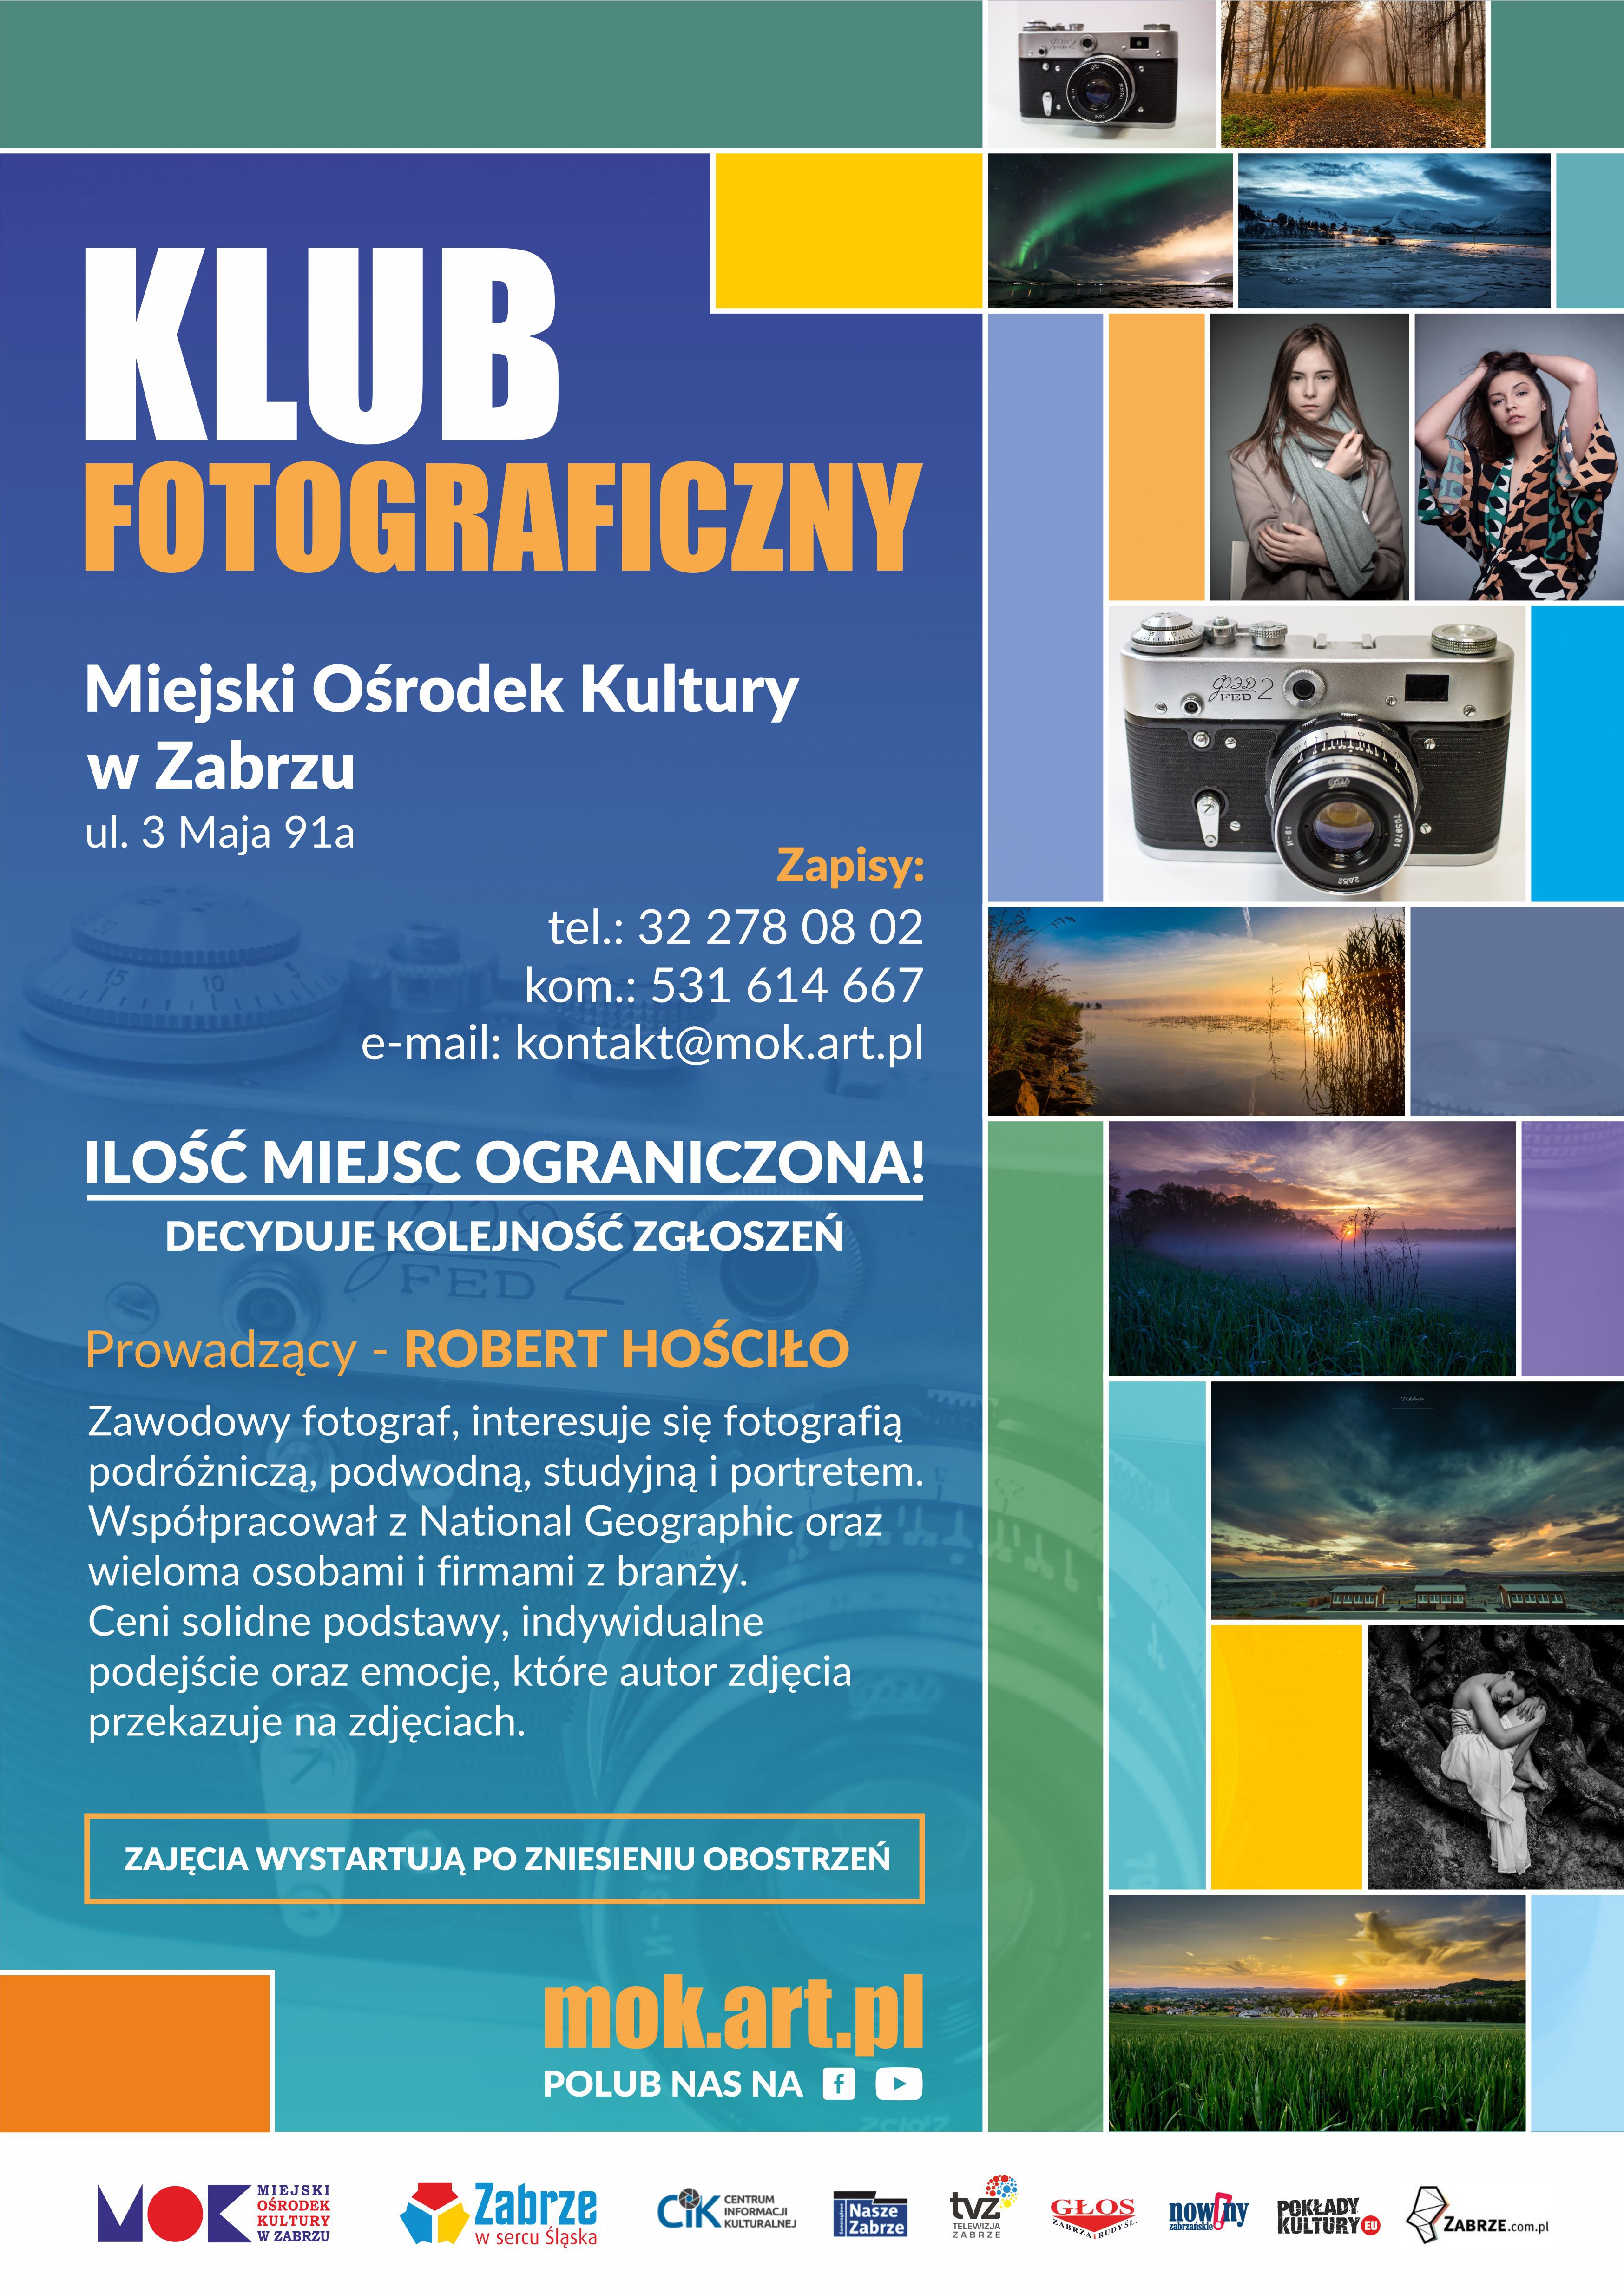 Plakat promujący Klub Fotograficzny, zawierający zdjęcia przedstawiające kobiety, krajobraz oraz aparat. 